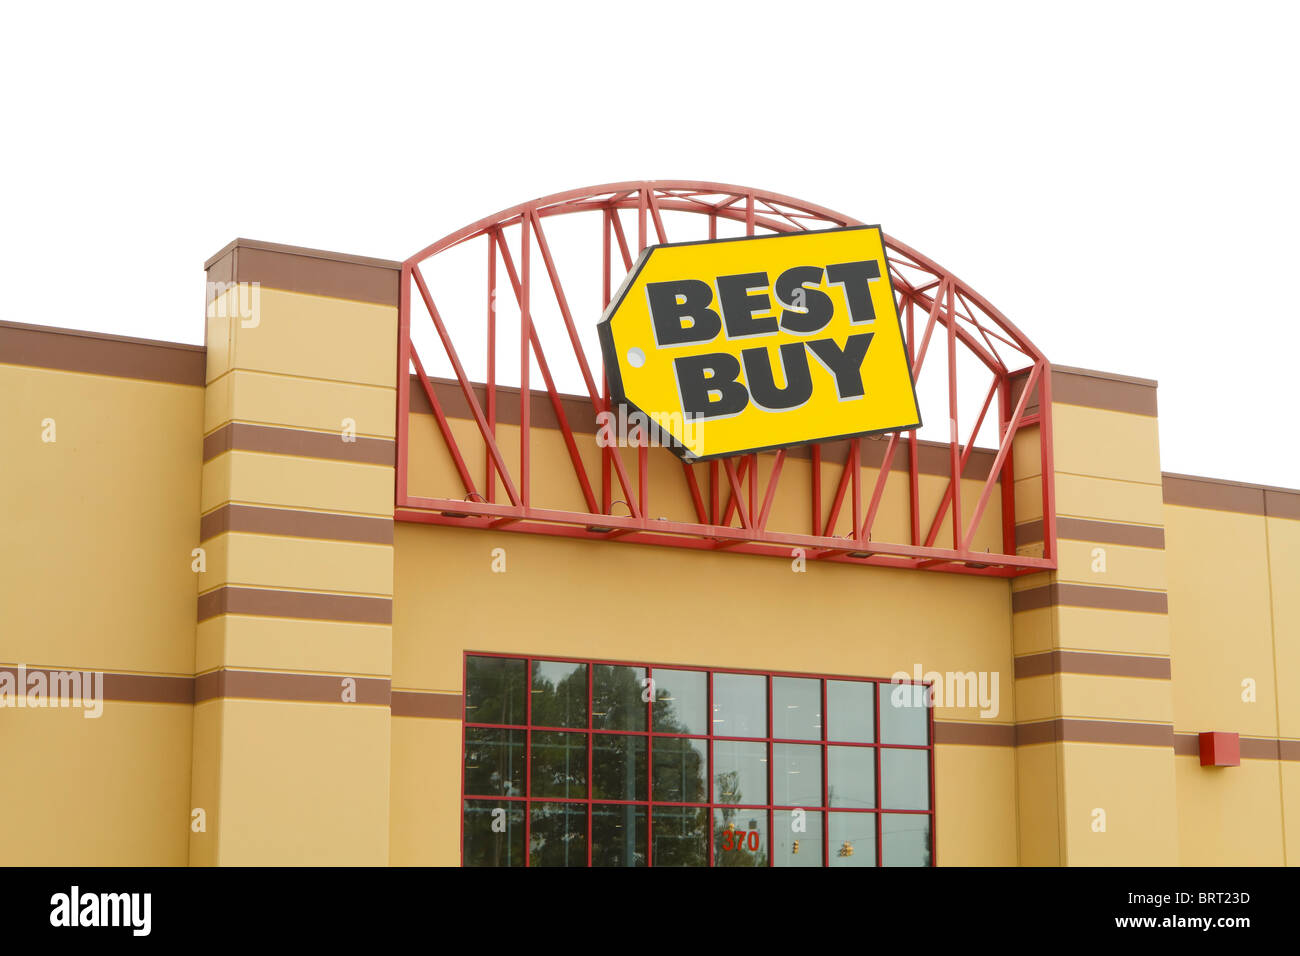 Der Haupteingang und das Logo Marke Zeichen für ein Best Buy Einzelhandel Elektronik-Geschäft an einem bewölkten Tag bewölkt. Stockfoto